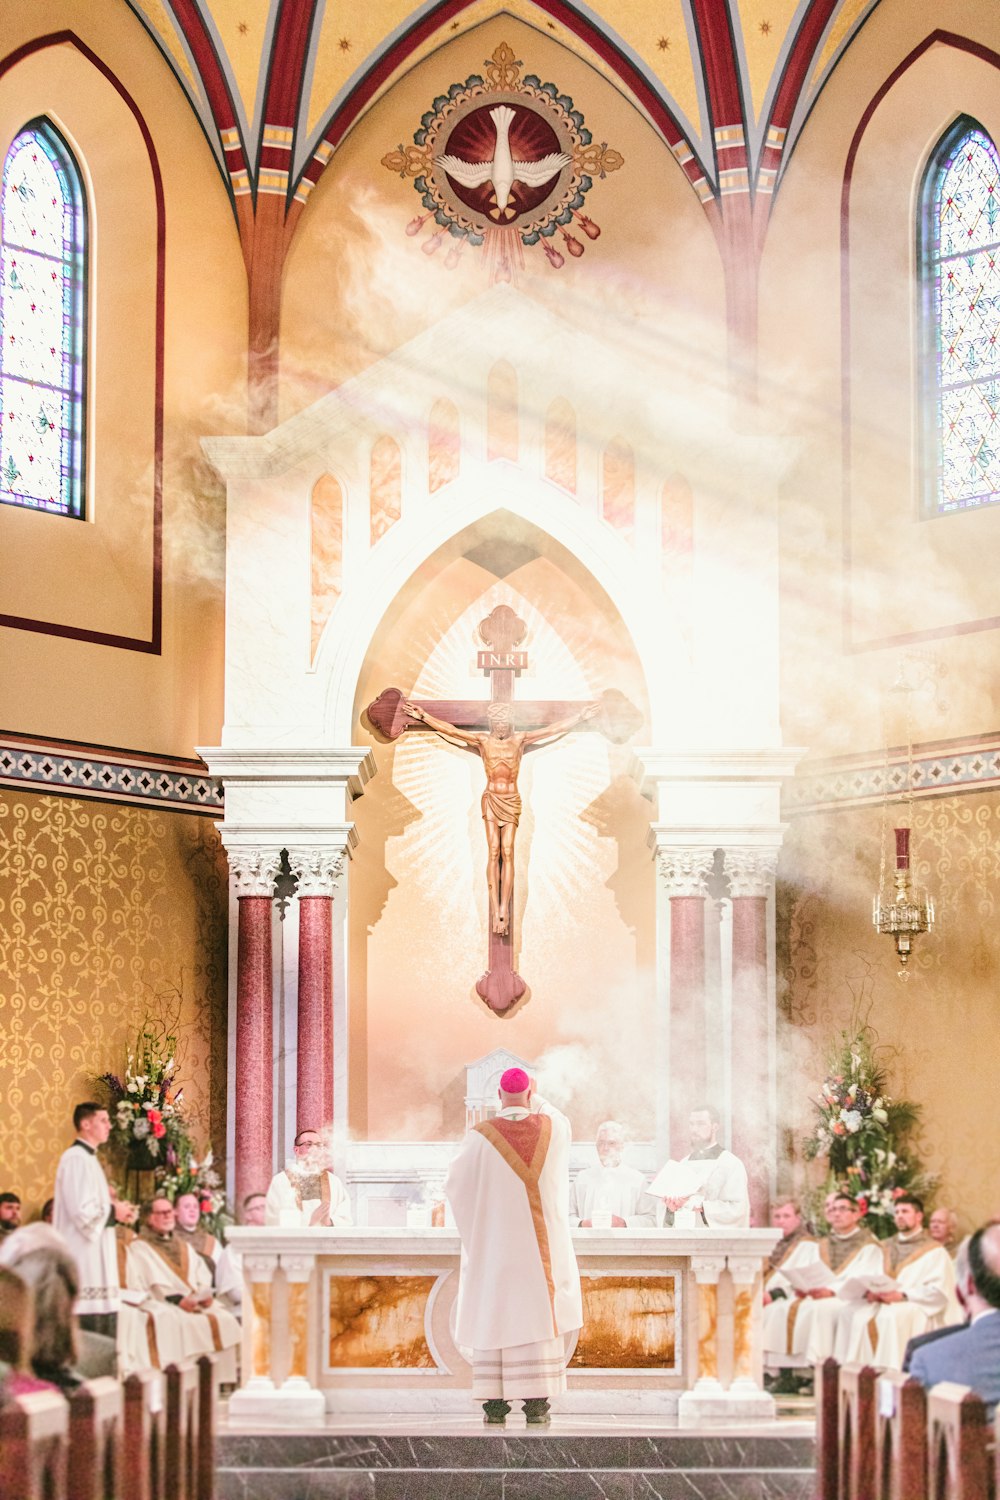 Un sacerdote in piedi all'altare di una chiesa